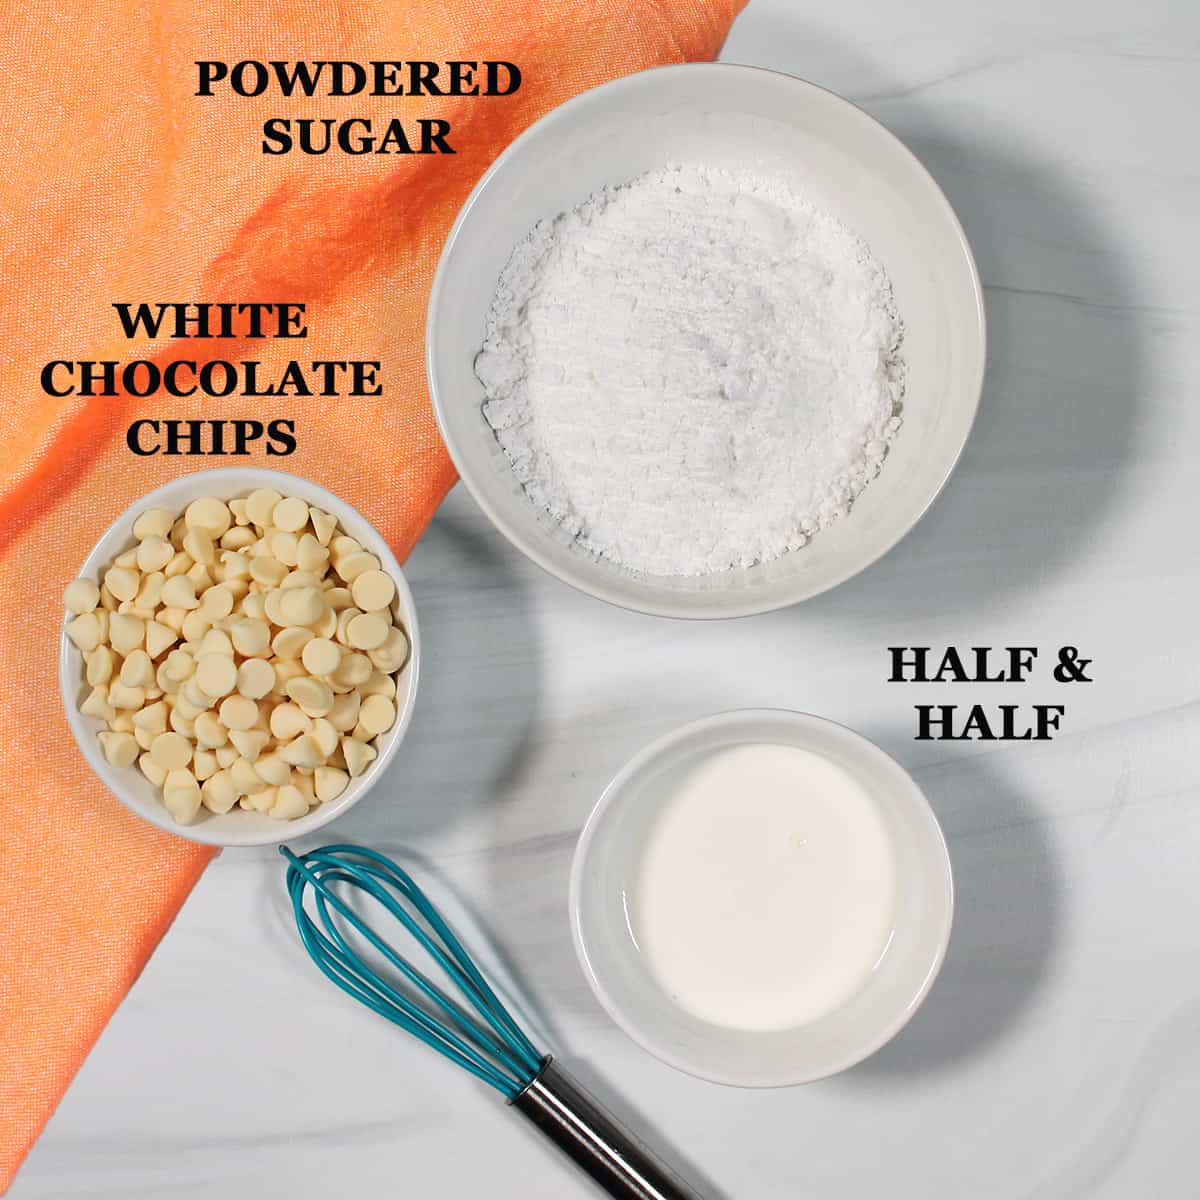 White chocolate glaze ingredients.